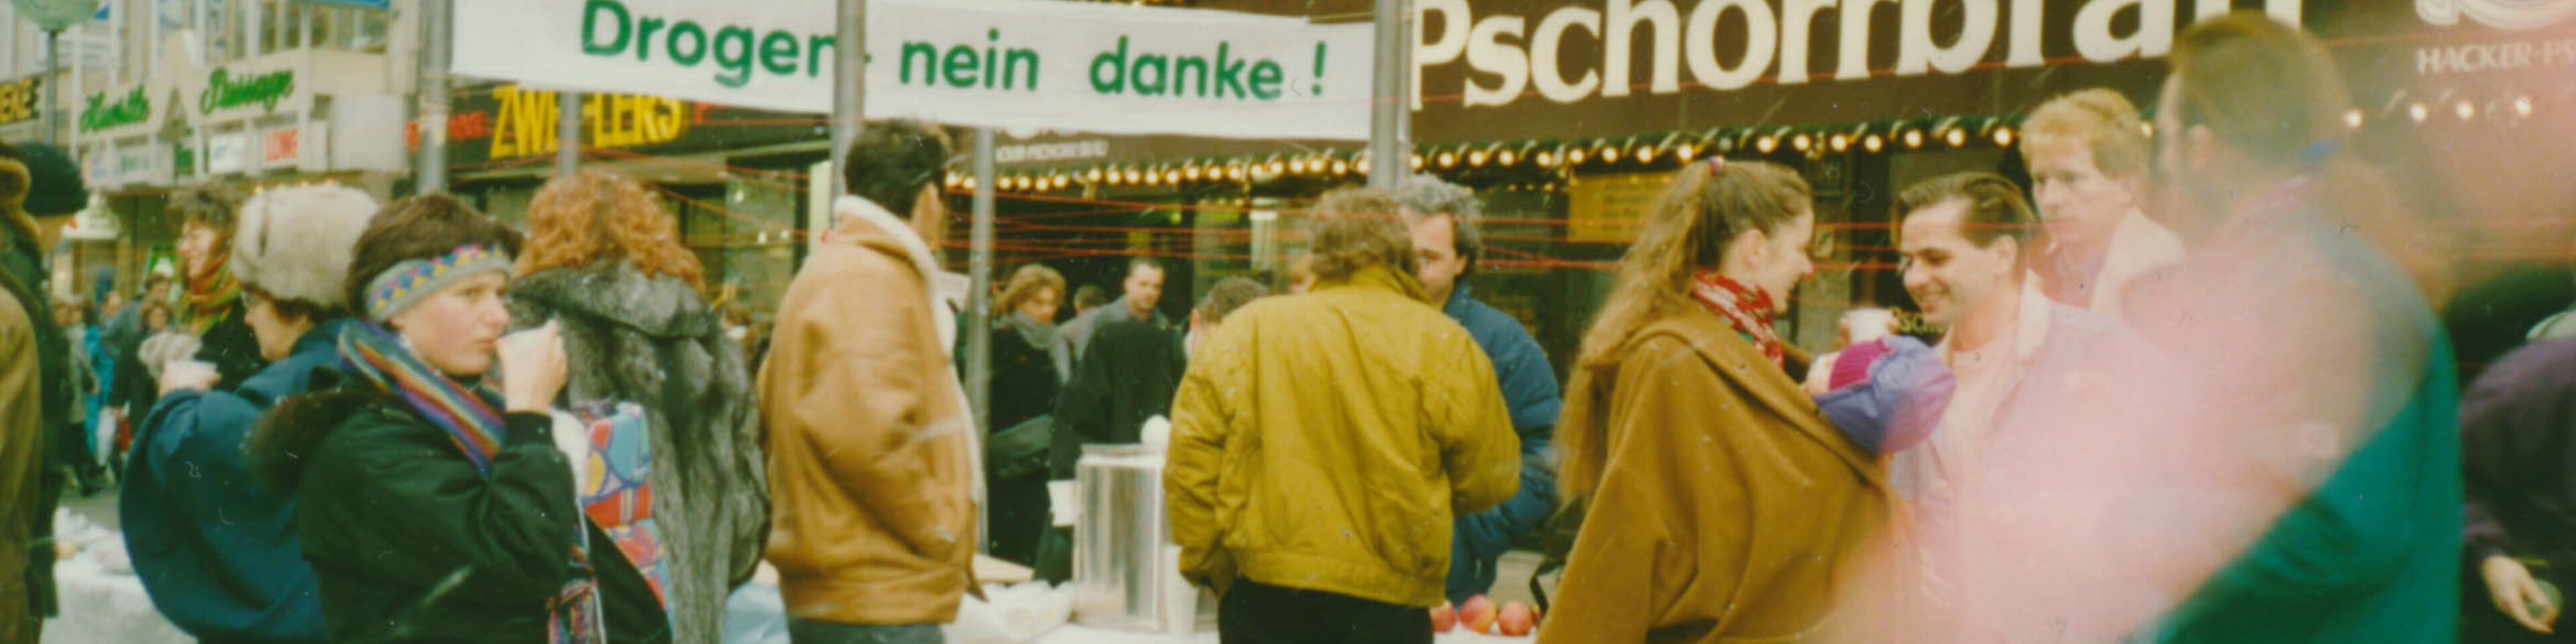 Stand der Suchtkrankenhilfe in der Fußgängerzone Neuhauser Straße, ca. 1990. | © (Fotograf unbekannt, Archiv des DiCV München und Freising e. V., Fotosammlung)